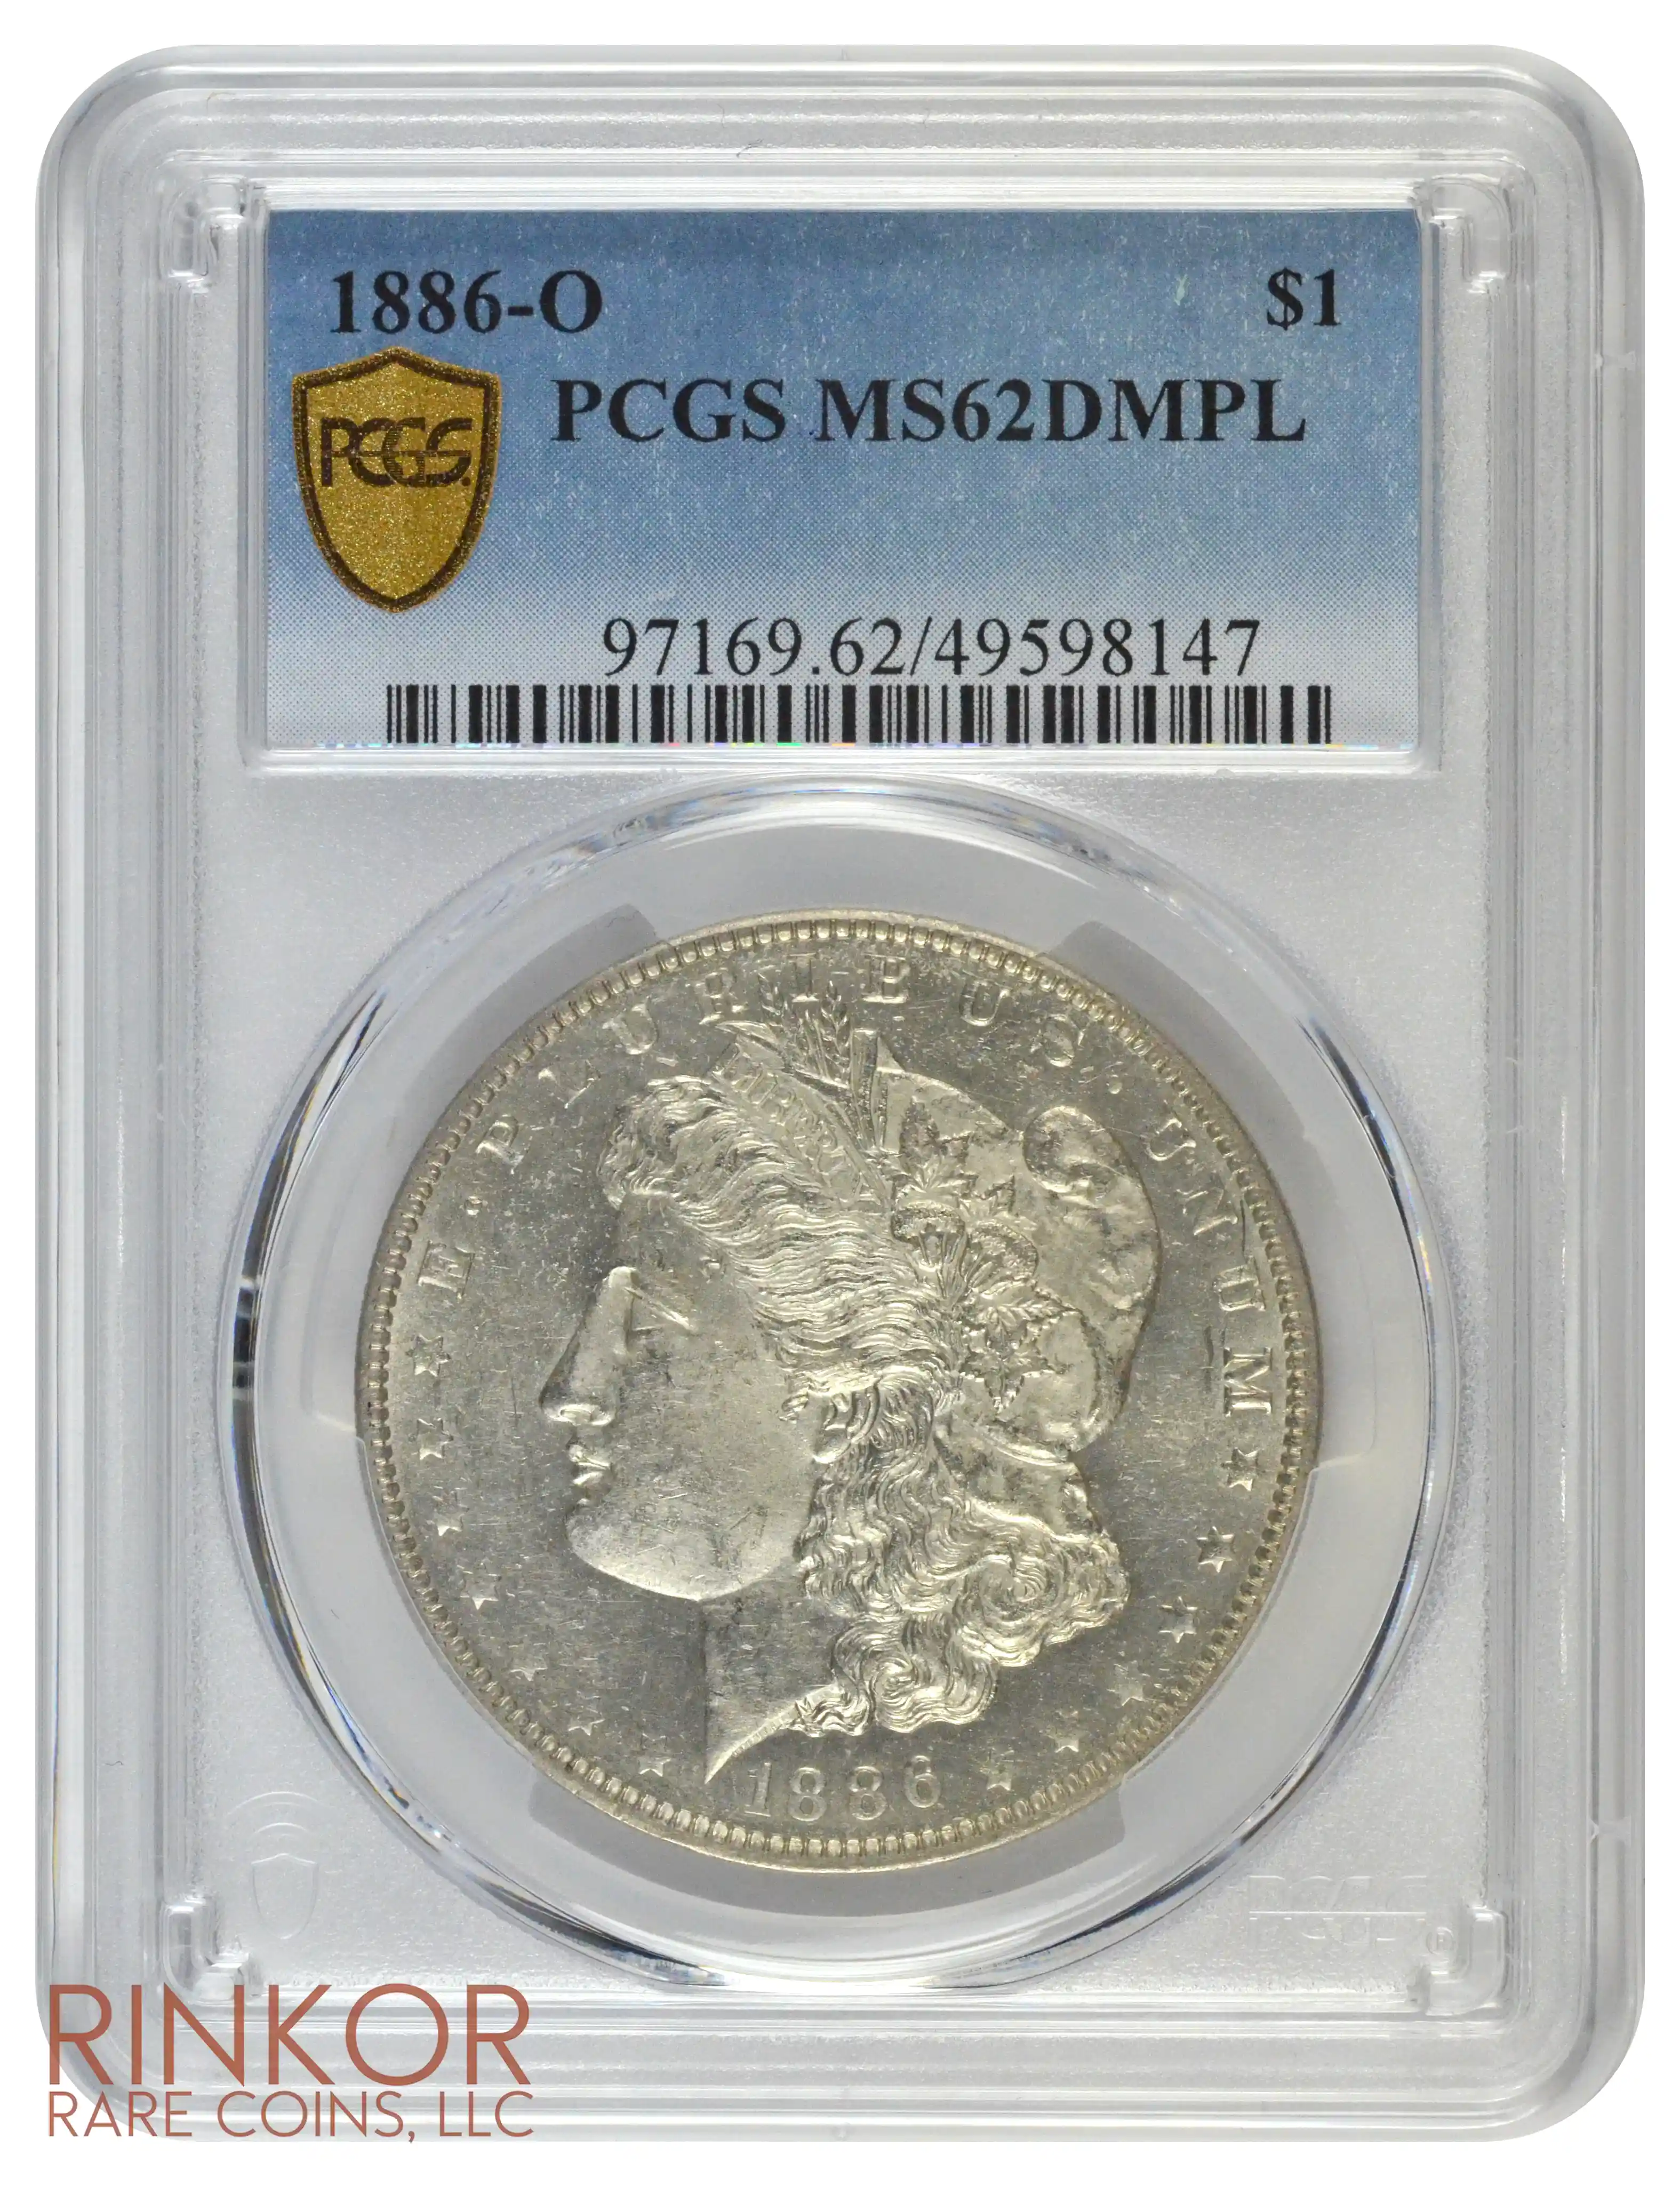 1886-O $1 PCGS MS 62 DMPL